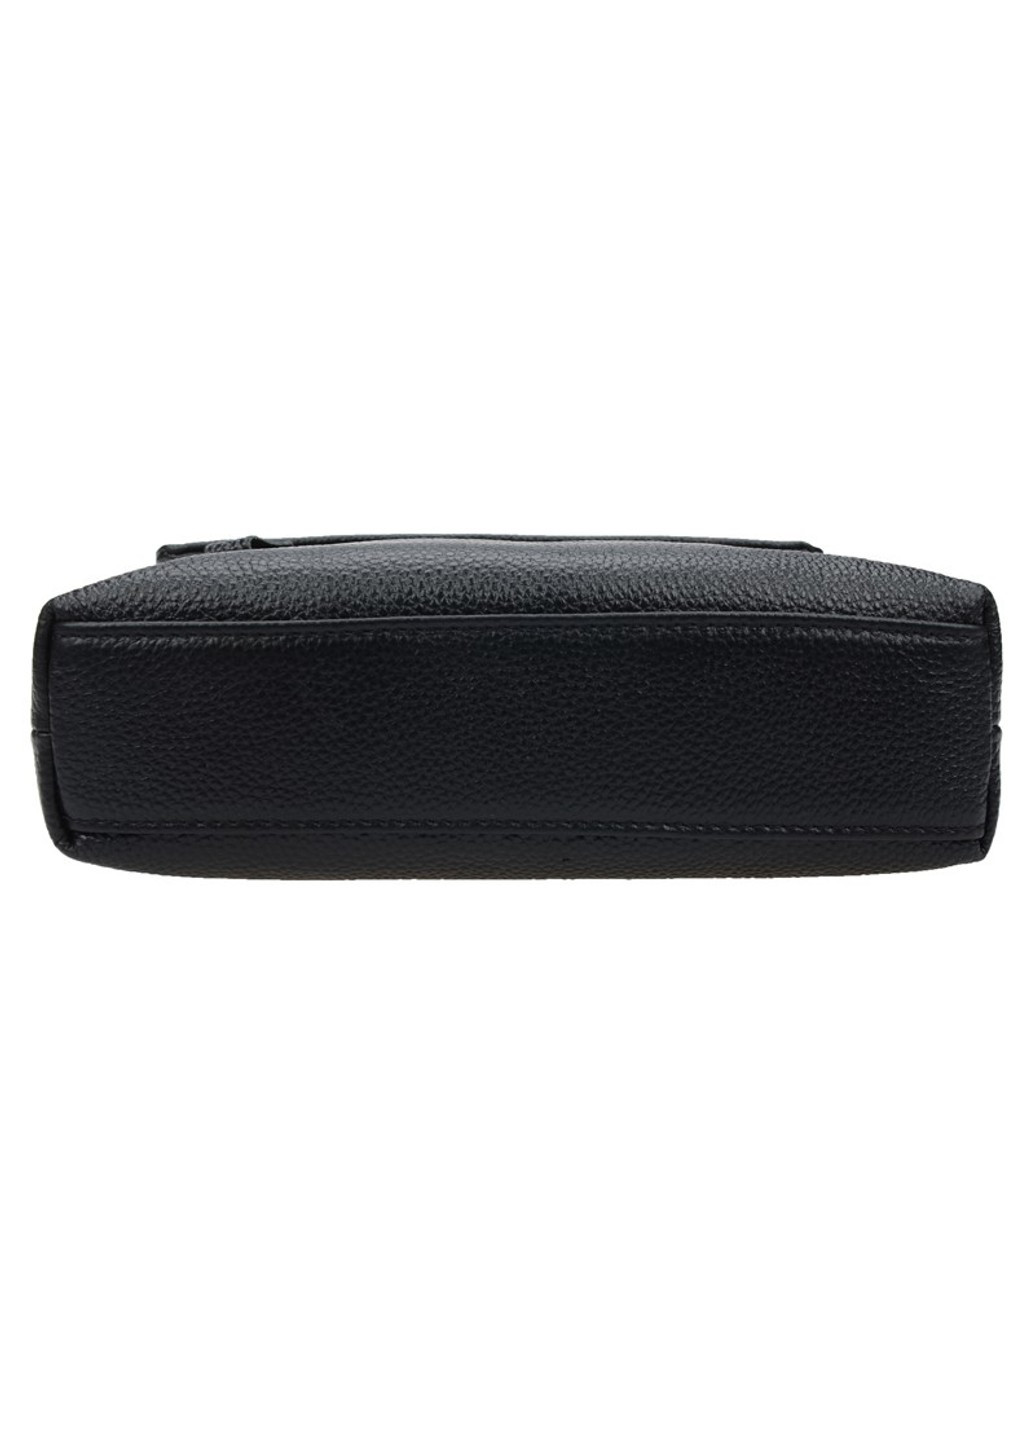 Мужская кожаная сумка k10013-black Borsa Leather (266143938)